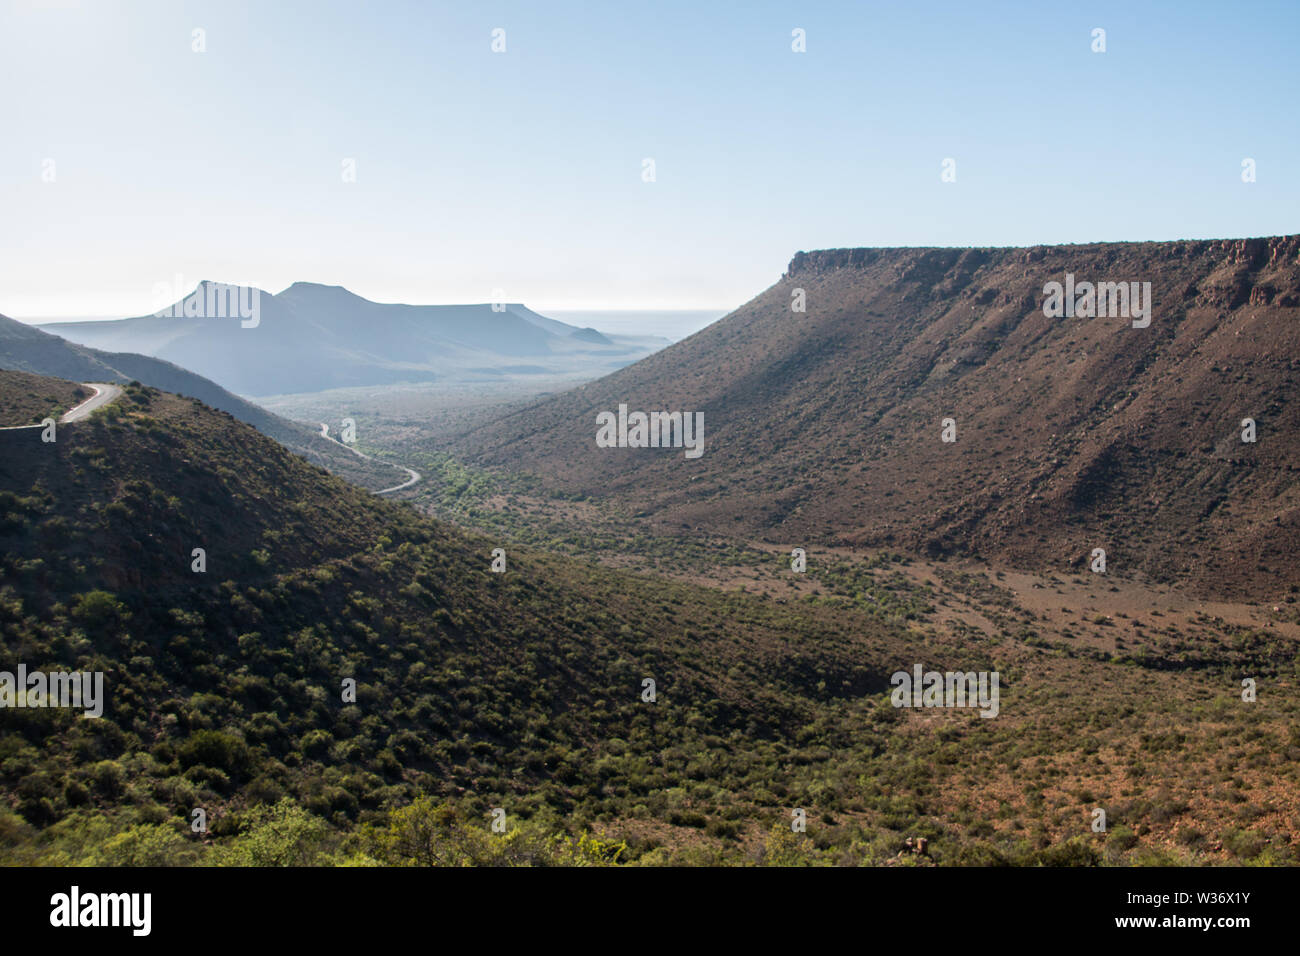 Mountain Pass paesaggio con cieli chiari nel Karoo, semi arido deserto in Sud Africa. Foto Stock